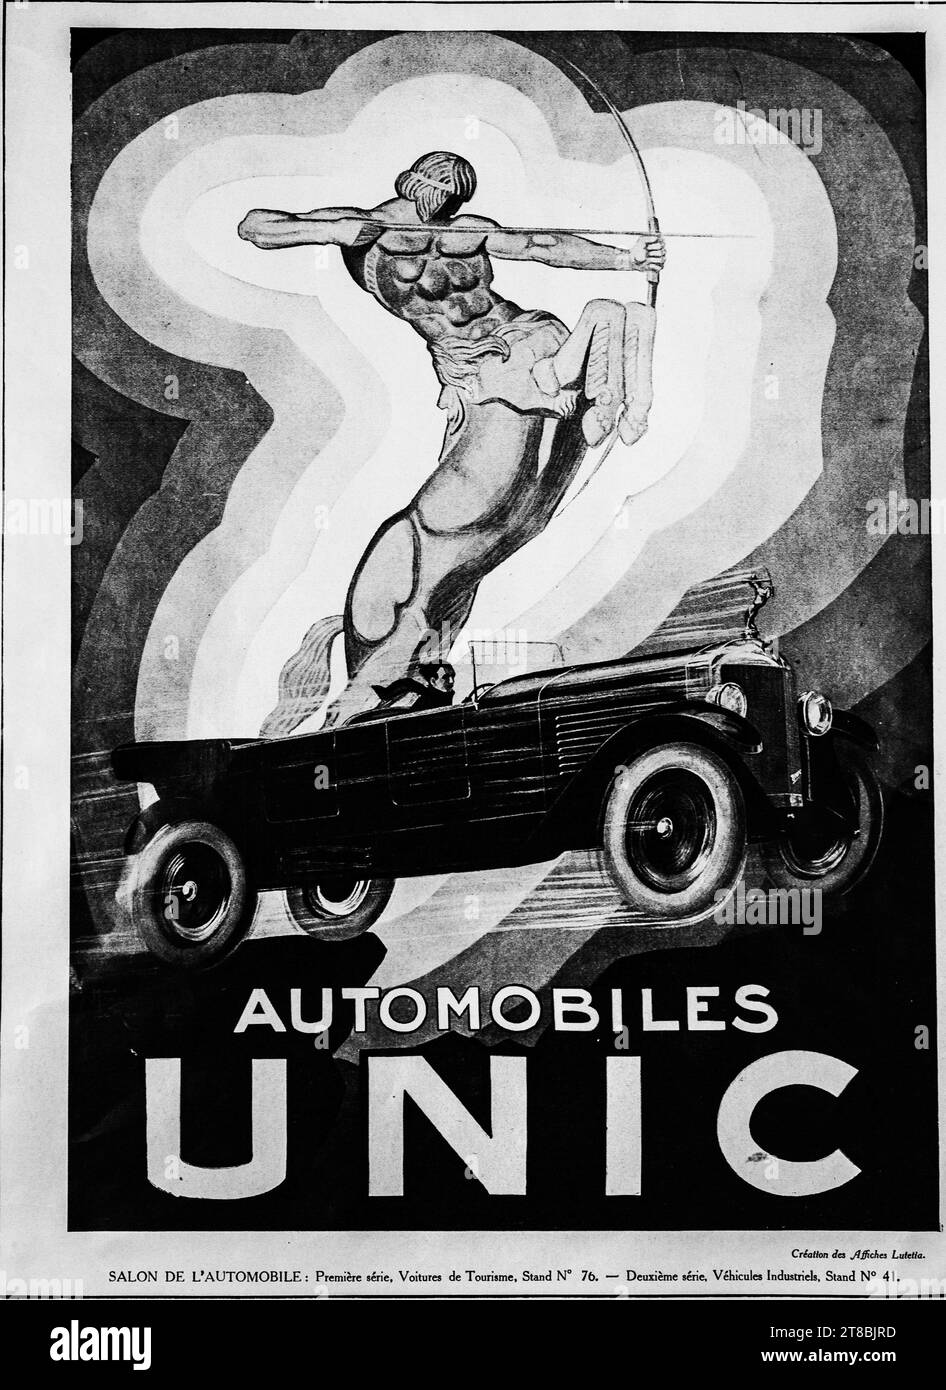 Un anuncio de estilo Art Deco vintage de 1926 para un coche Unic. Los coches del Centro de Información de las Naciones Unidas se fabricaron en Francia entre 1905 y 1938. El anuncio muestra una poderosa figura de arquero mítico. Foto de stock